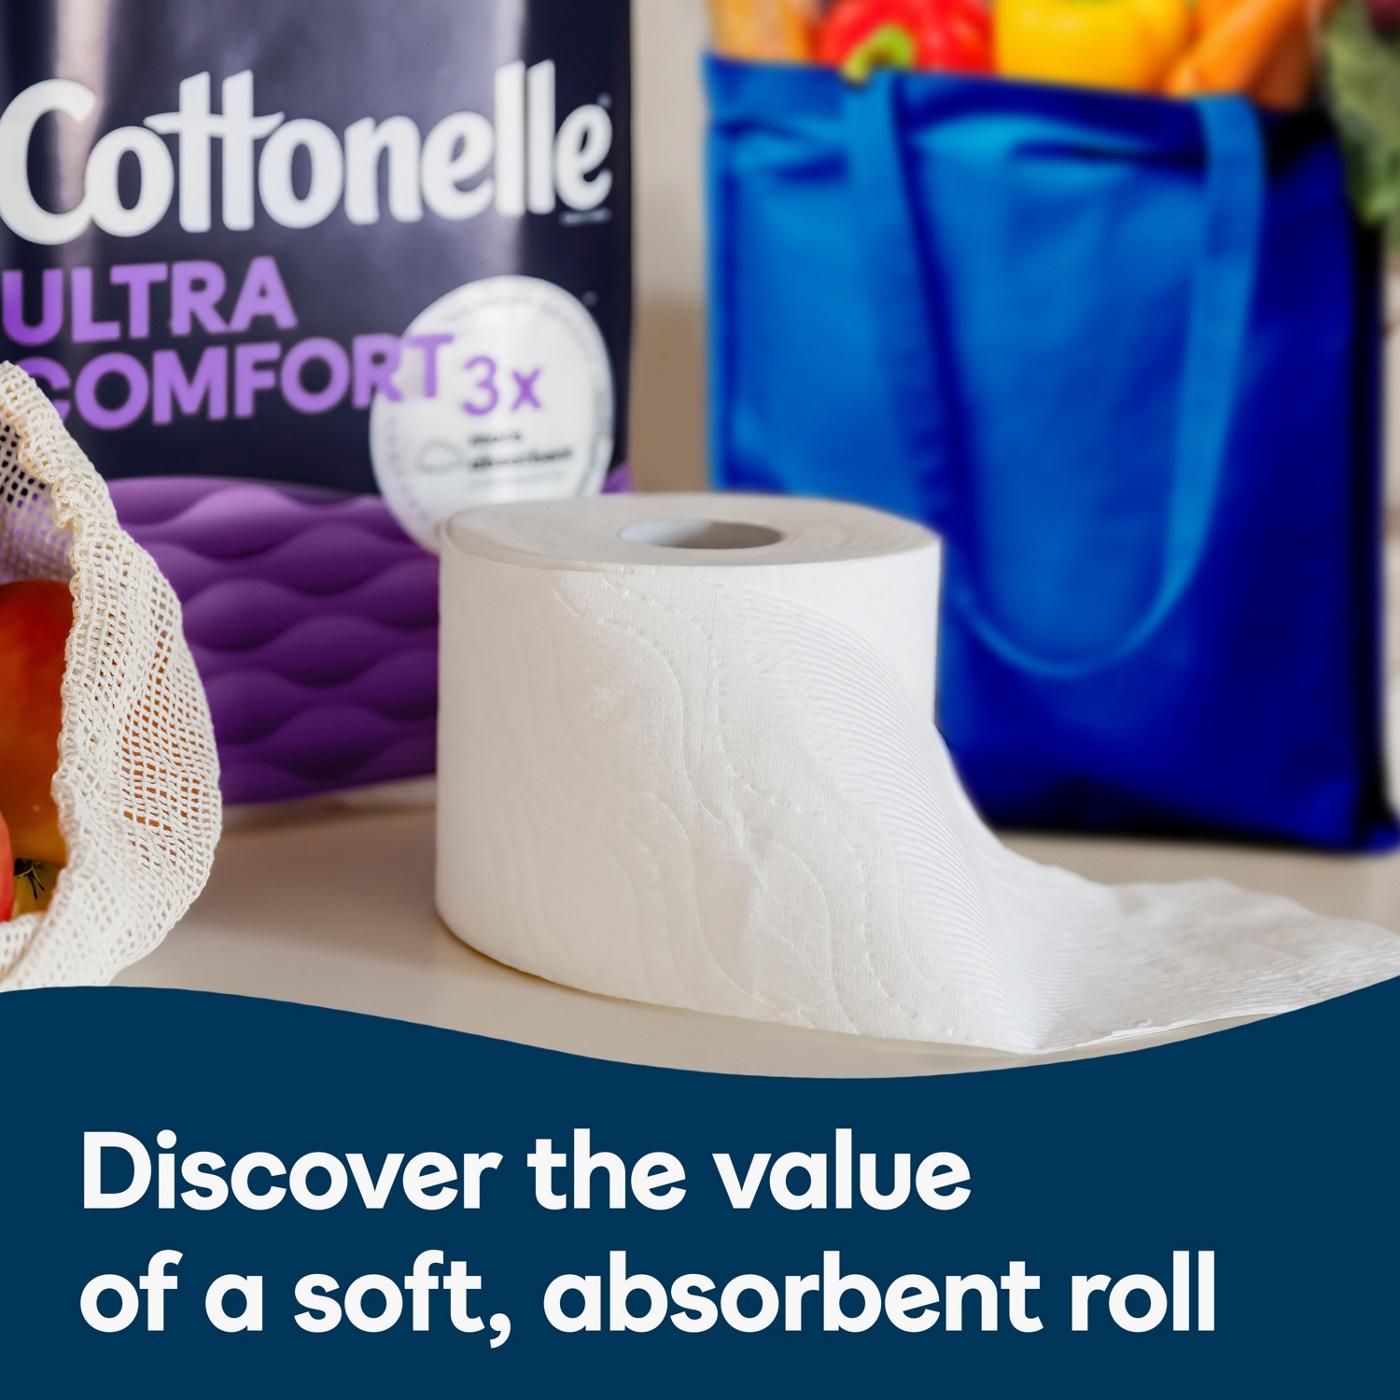 Cottonelle Ultra Comfort Strong Toilet Paper - Shop Toilet Paper